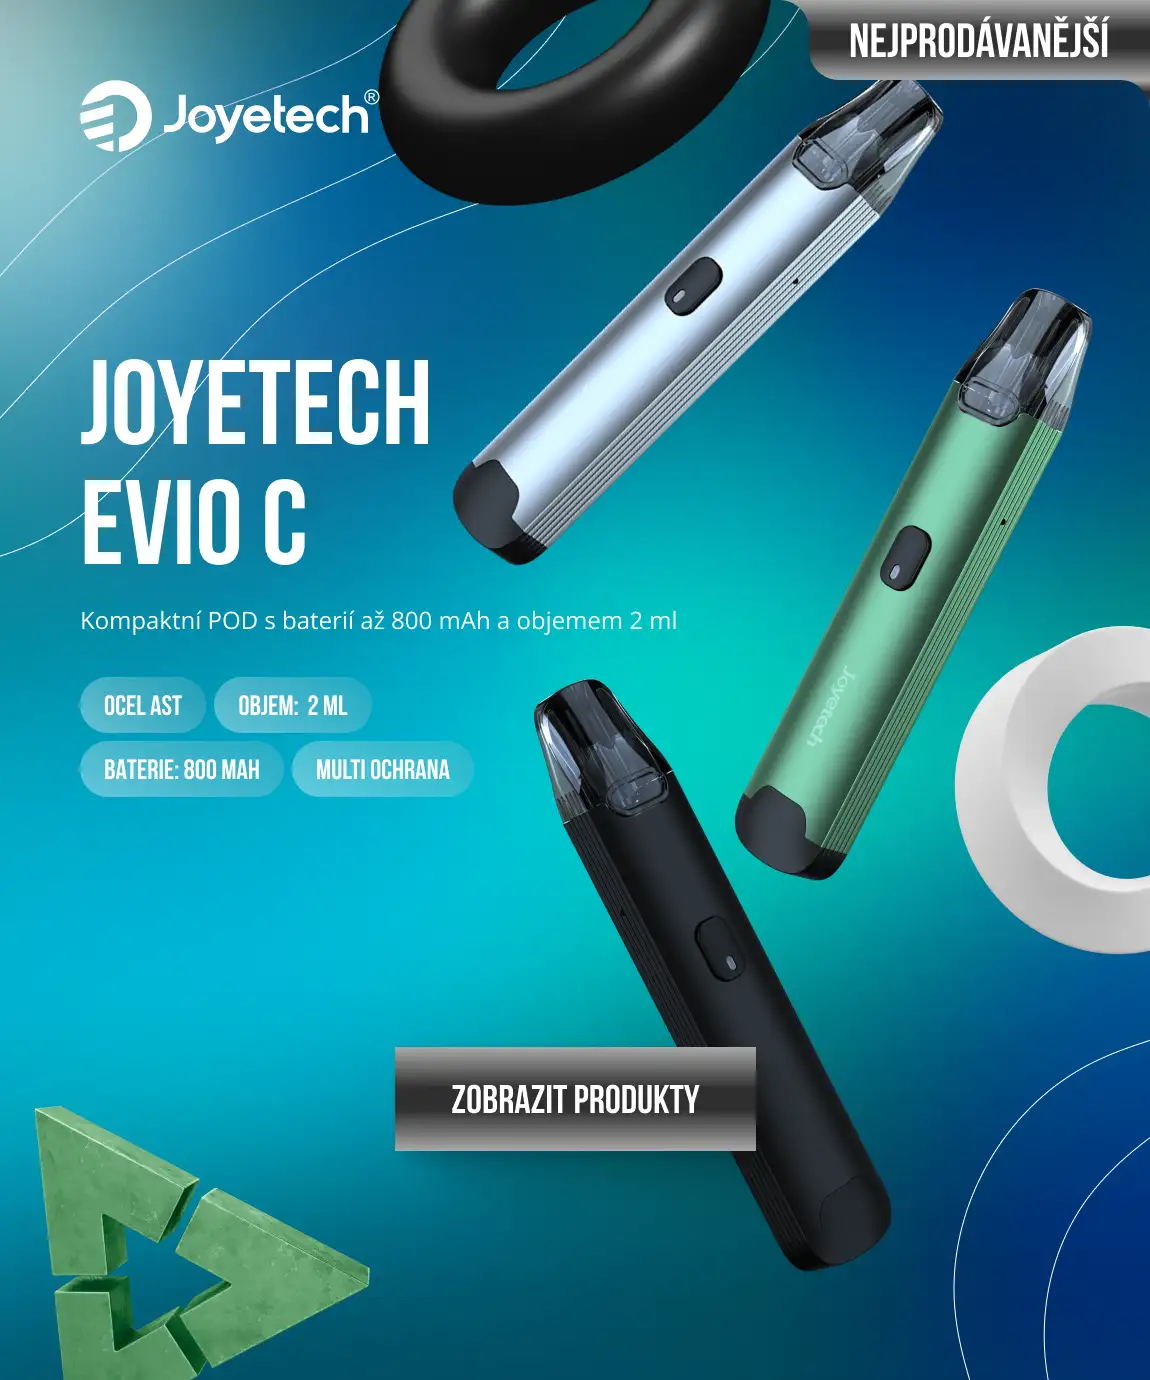 JOYETECH EVIO C: Kompaktní POD s baterií až 800 mAh a objemem 2 ml